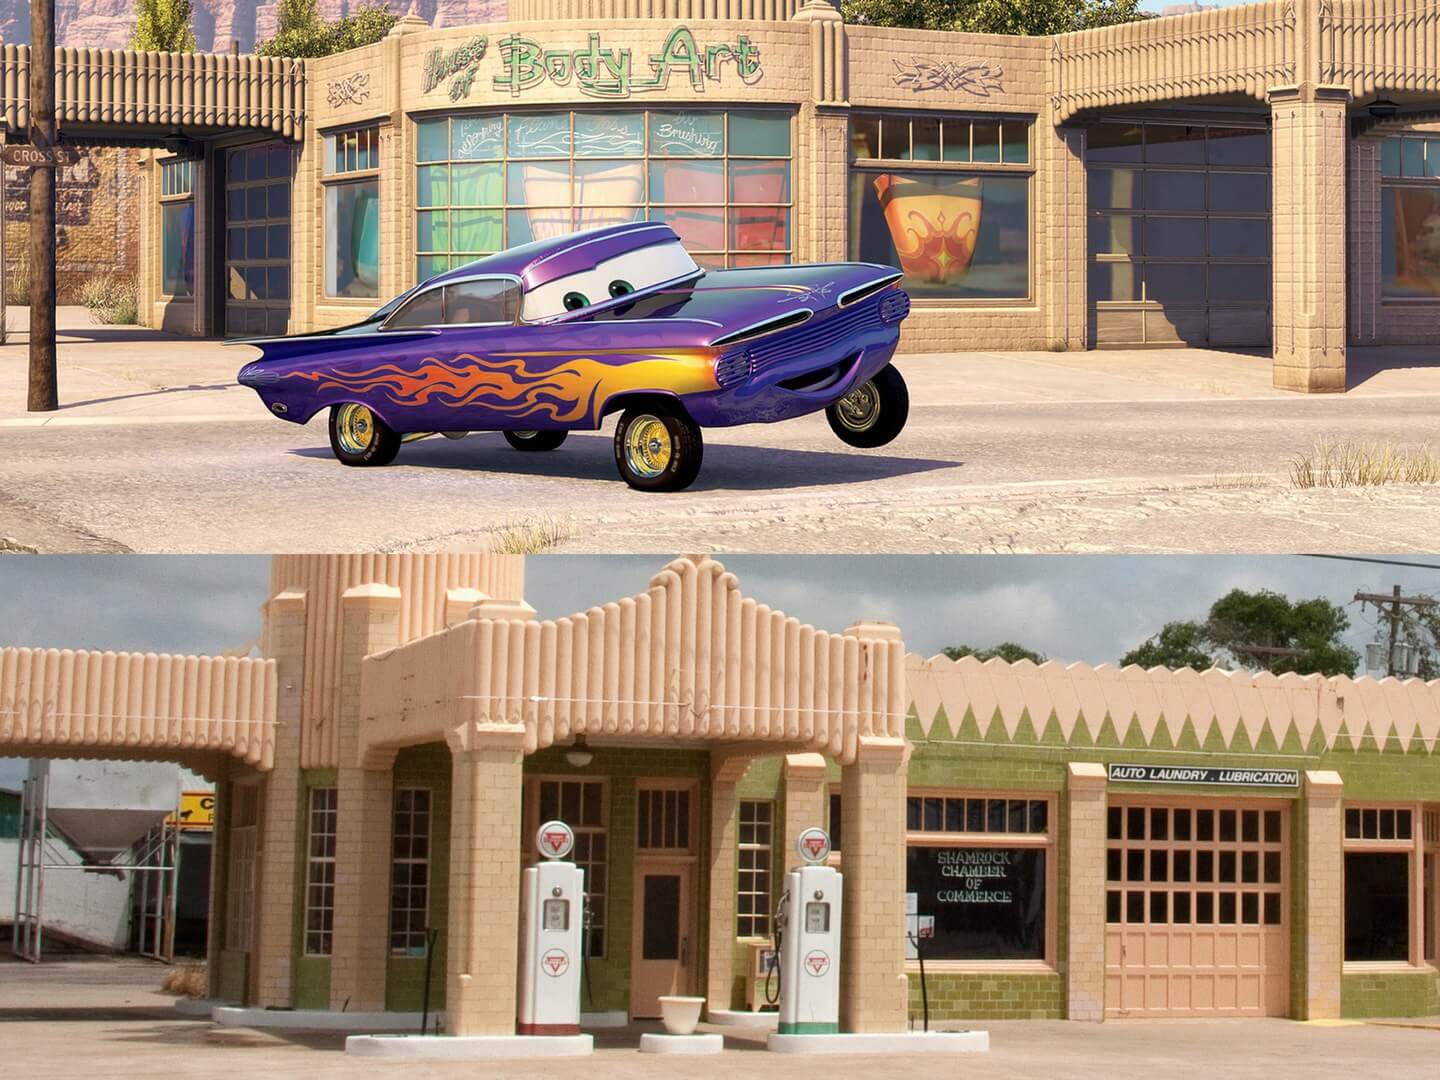 فيلم سيارات: متحف U-Drop Inn، شامروك تكساس